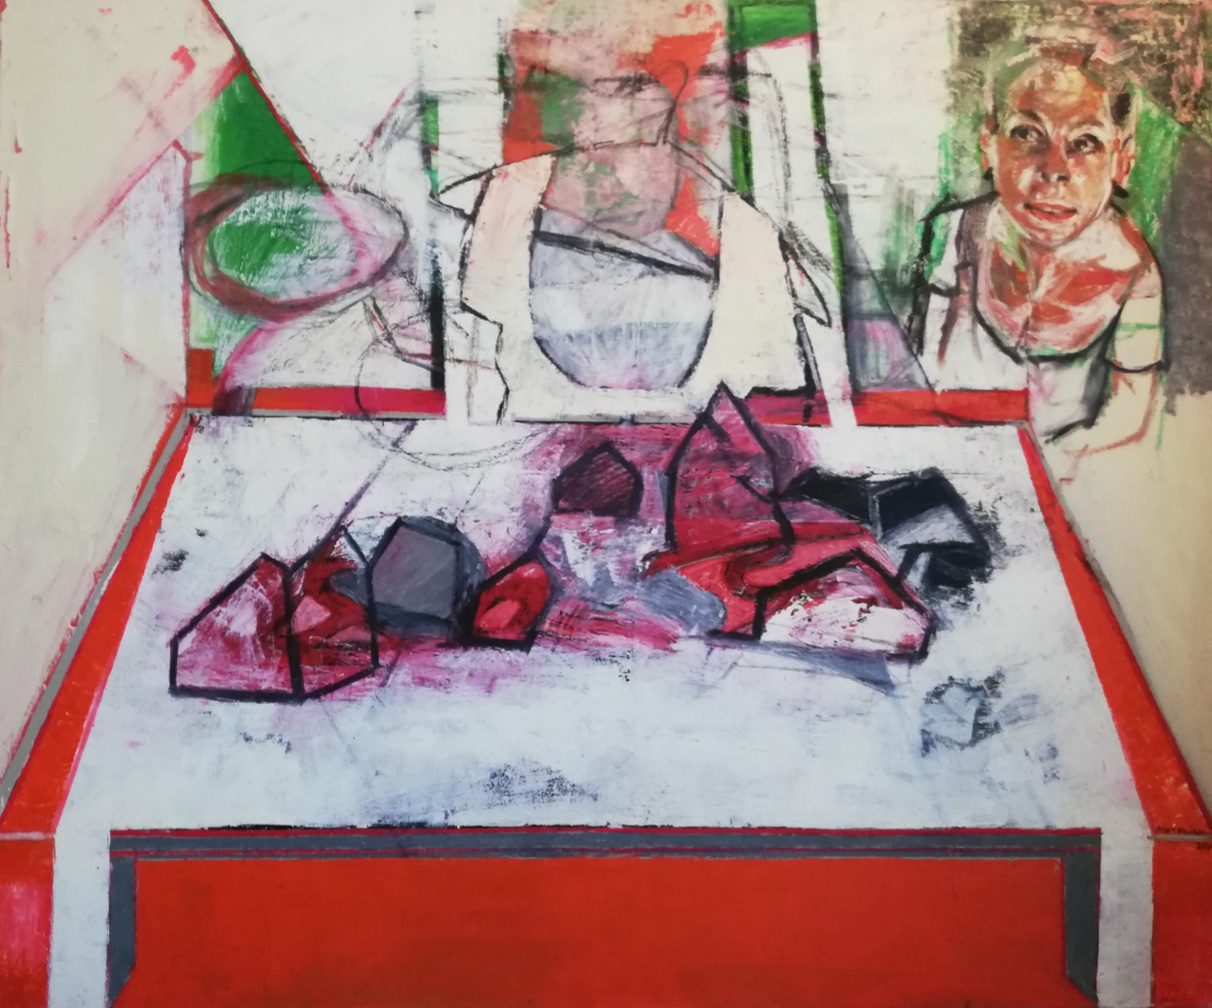 Irene Matsouki, Lunch, Oil on canvas, 120x100 cm, 2020